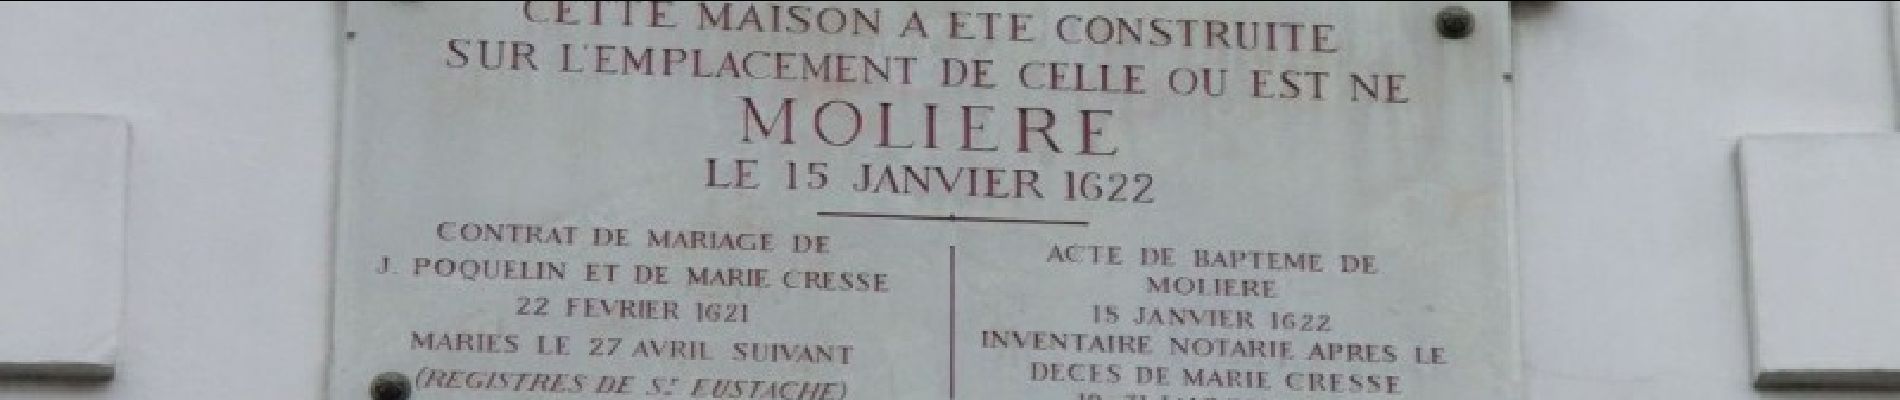 Point of interest Paris - Vrai lieu de la naissance de Molière - Photo